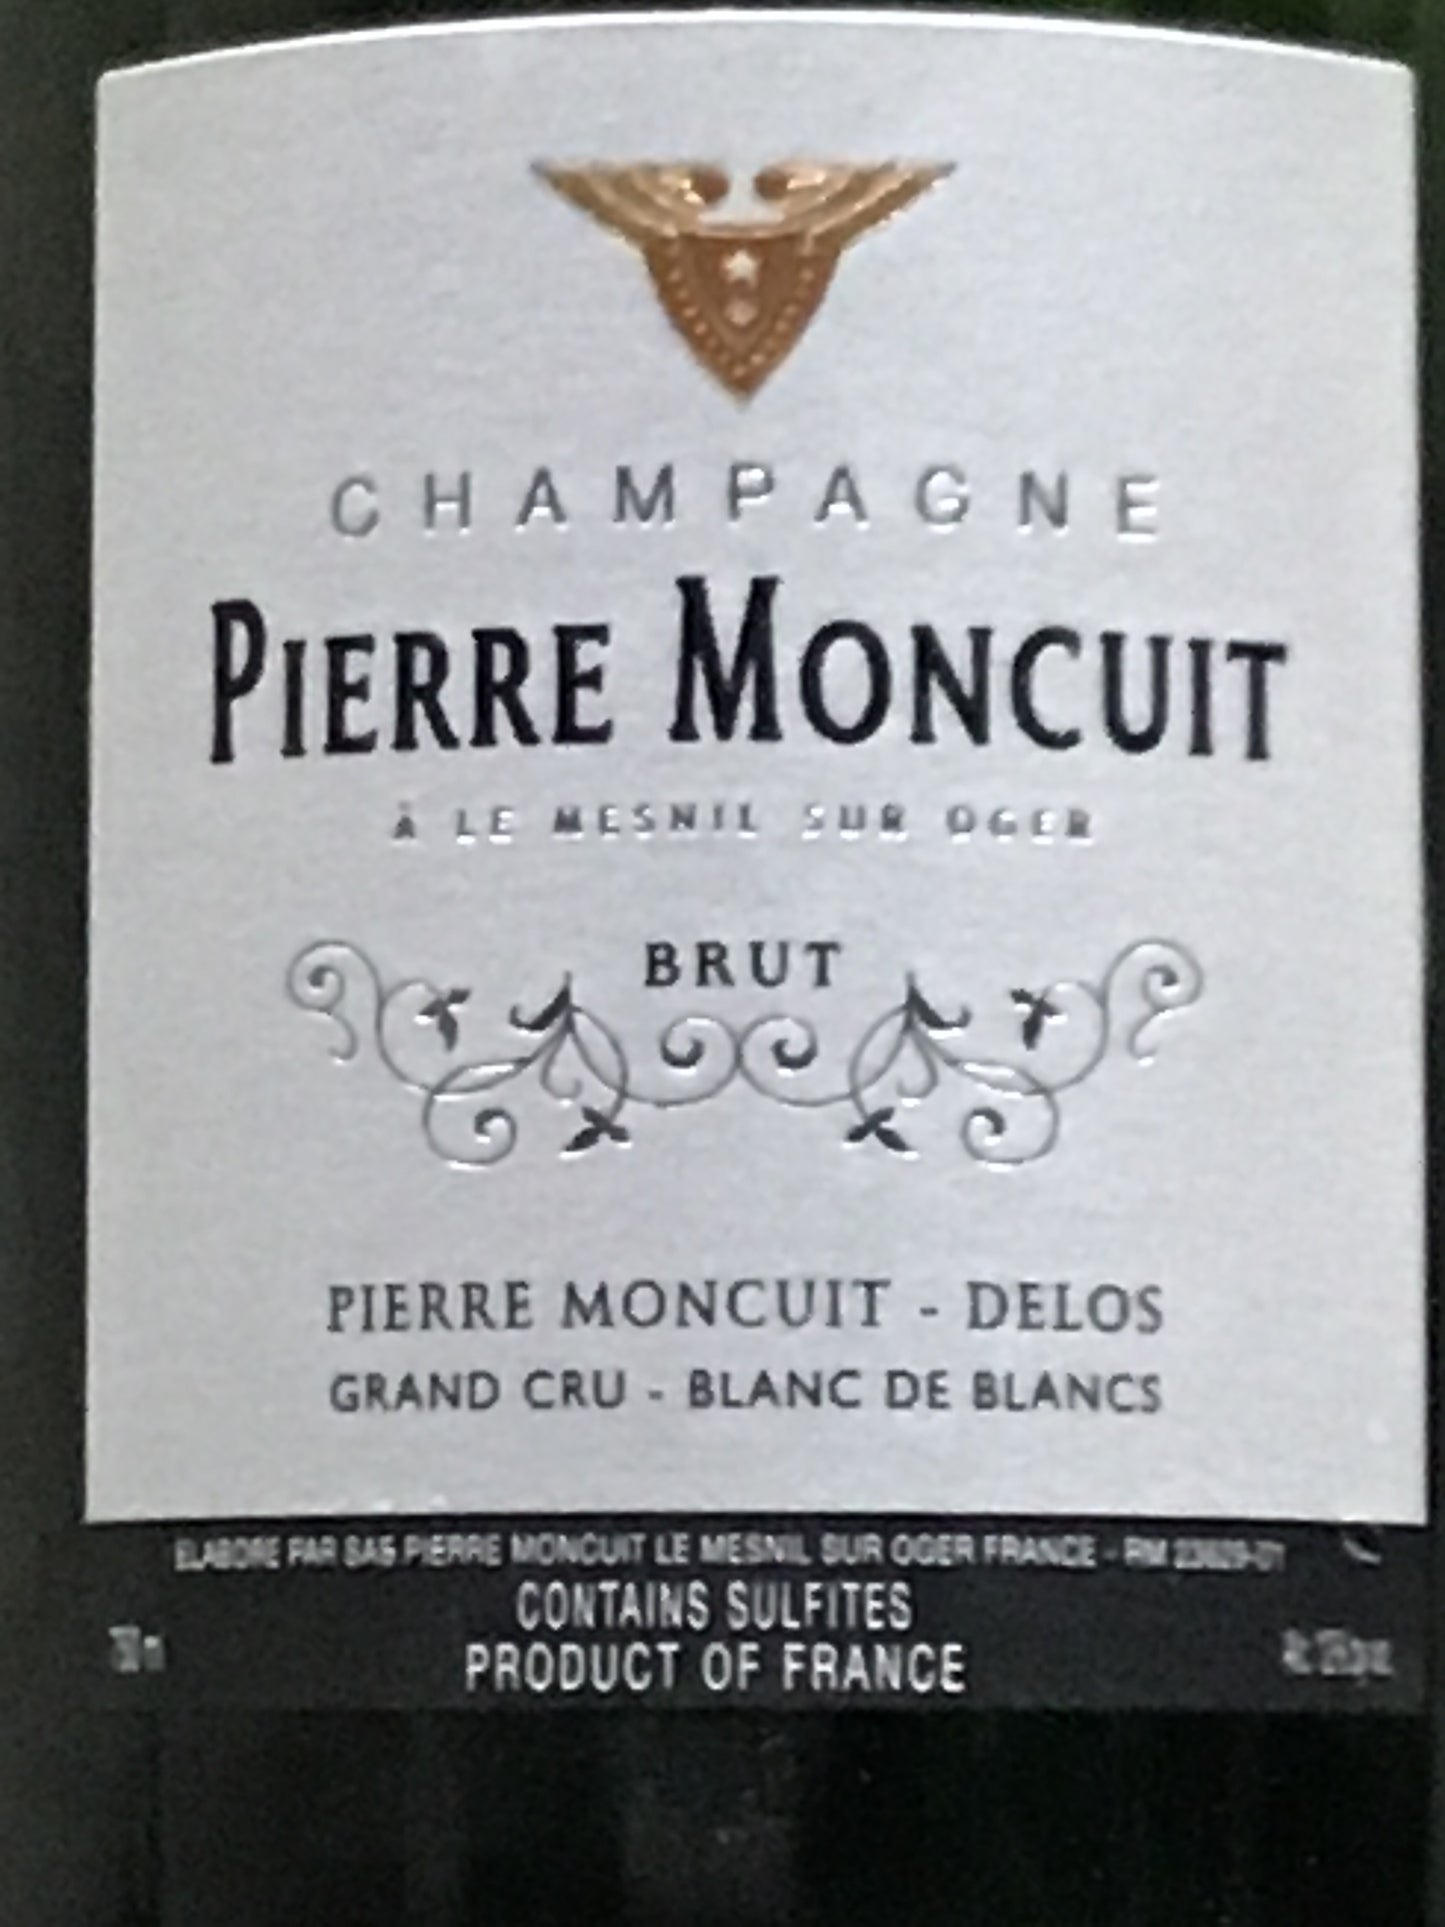 Pierre Moncuit-Delos - Blanc de Blancs - Mesnil-sur-Oger - Grand Cru Champagne Brut